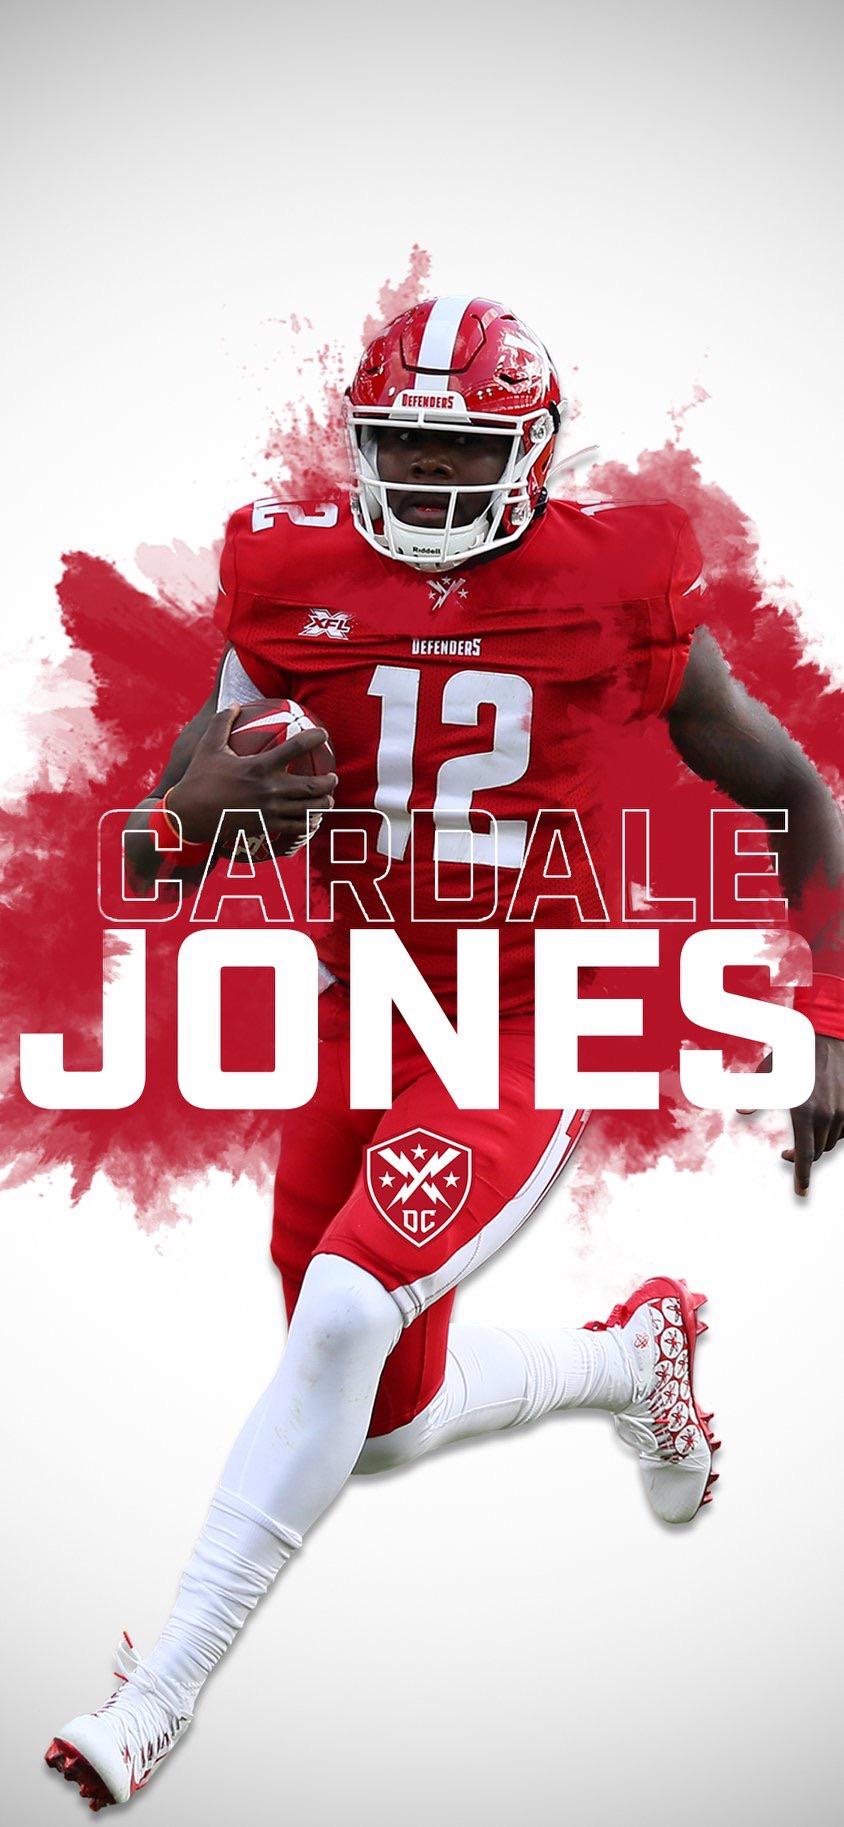 Cardale Jones Dc Defenders , HD Wallpaper & Backgrounds